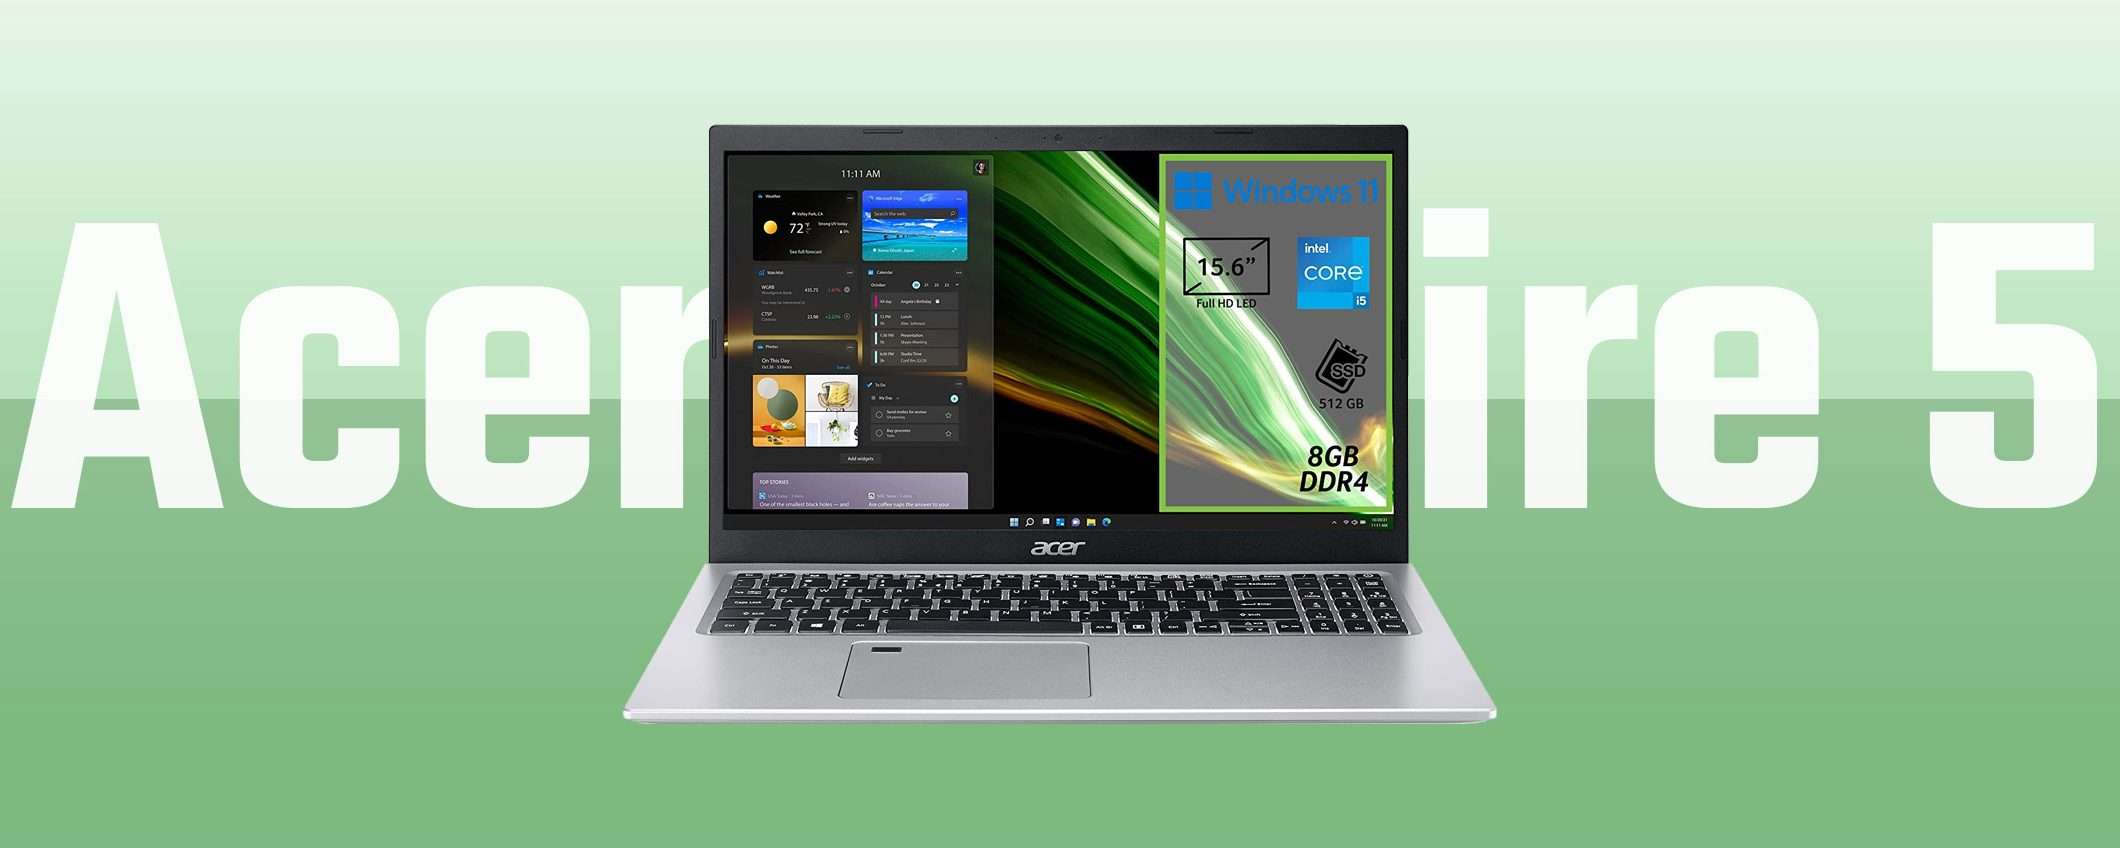 Prezzo stracciato per il laptop Acer Aspire 5